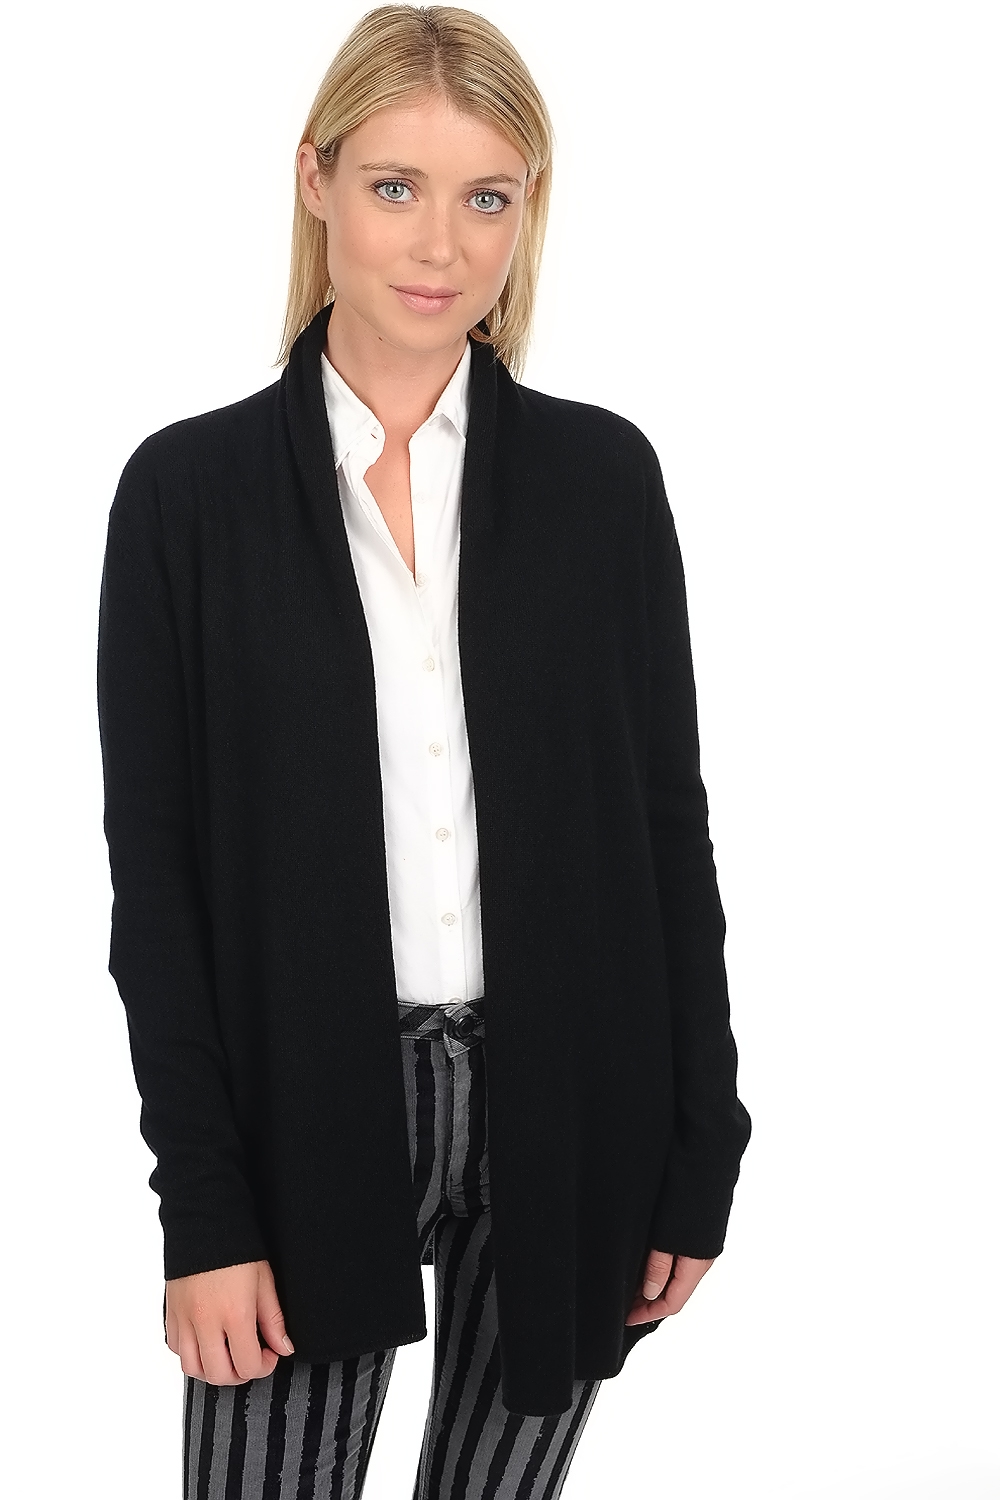 Cashmere cashmere donna cappotti pucci premium black 2xl